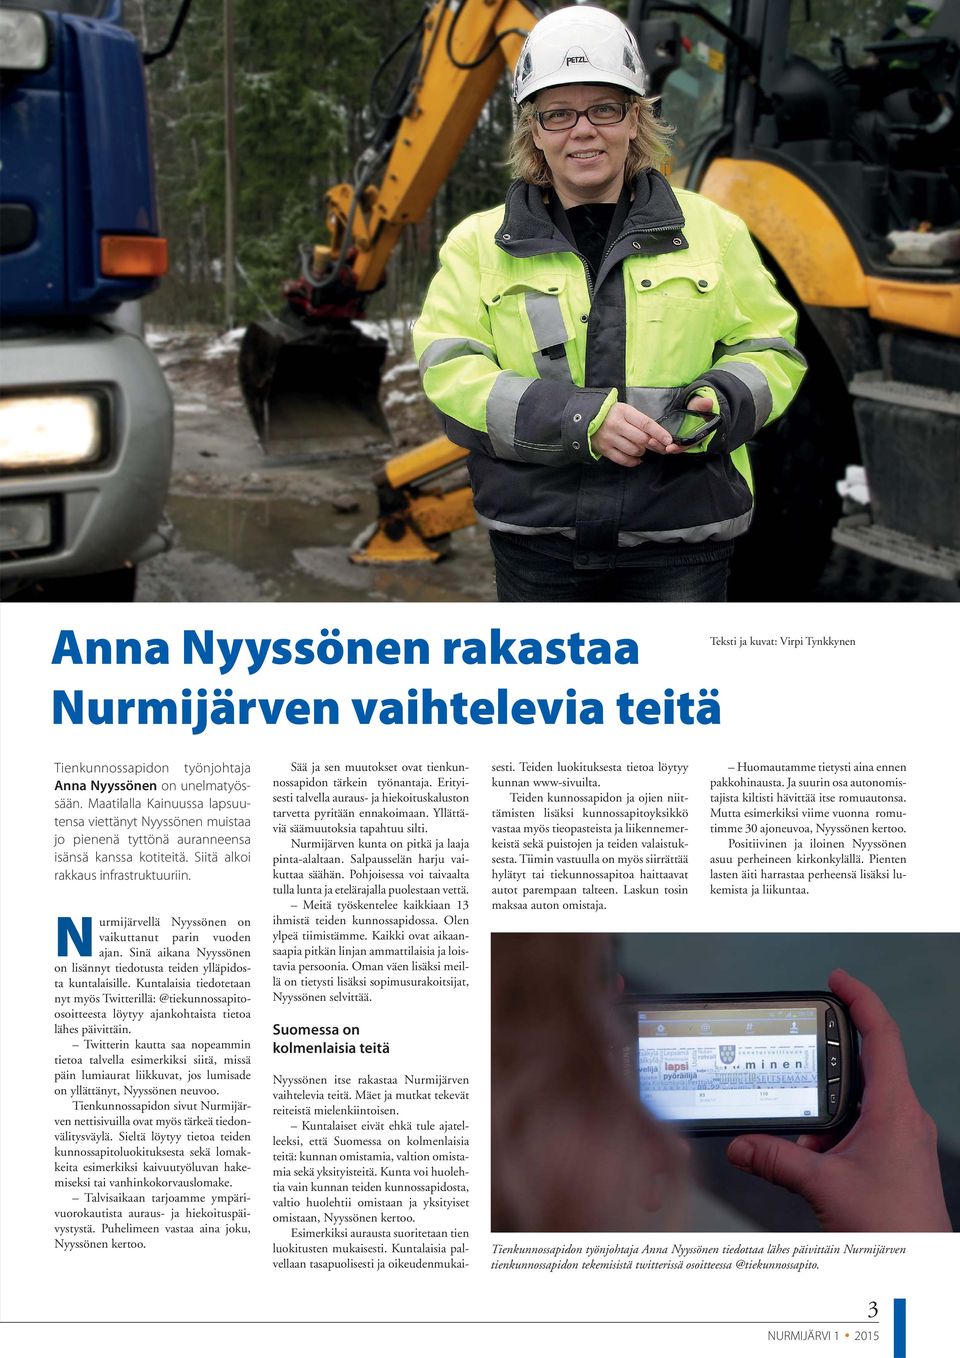 Nurmijärvellä Nyyssönen on vaikuttanut parin vuoden ajan. Sinä aikana Nyyssönen on lisännyt tiedotusta teiden ylläpidosta kuntalaisille.